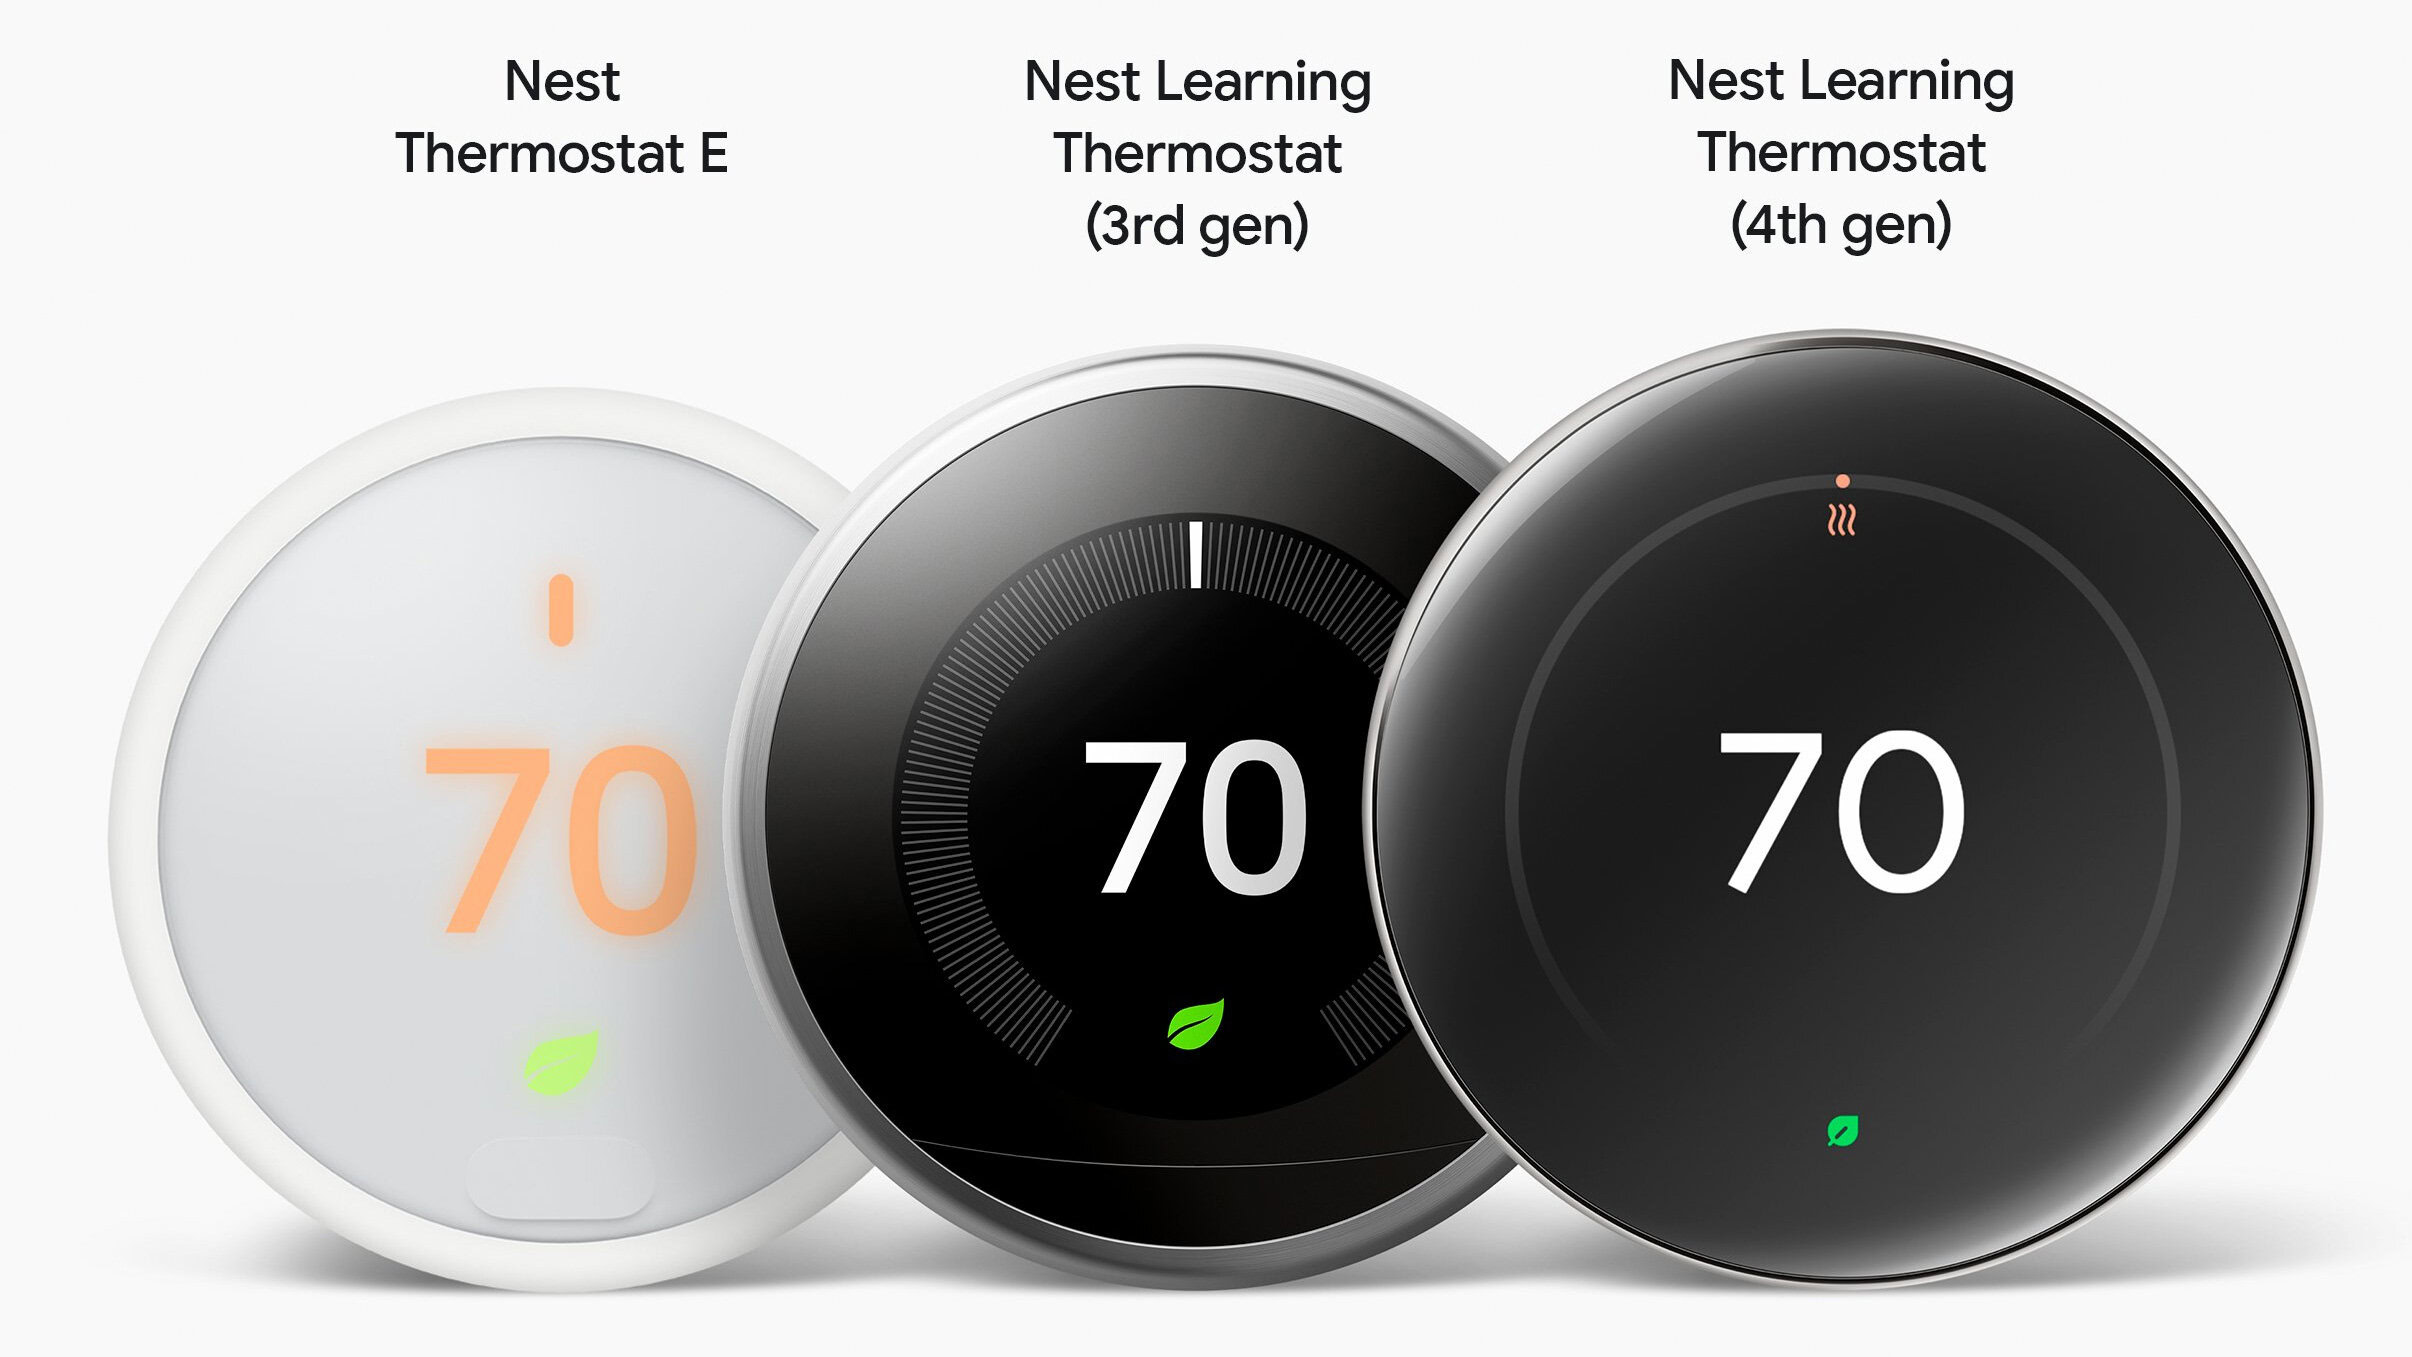 Filtración de Google adelanta el próximo termostato inteligente Nest de cuarta generación